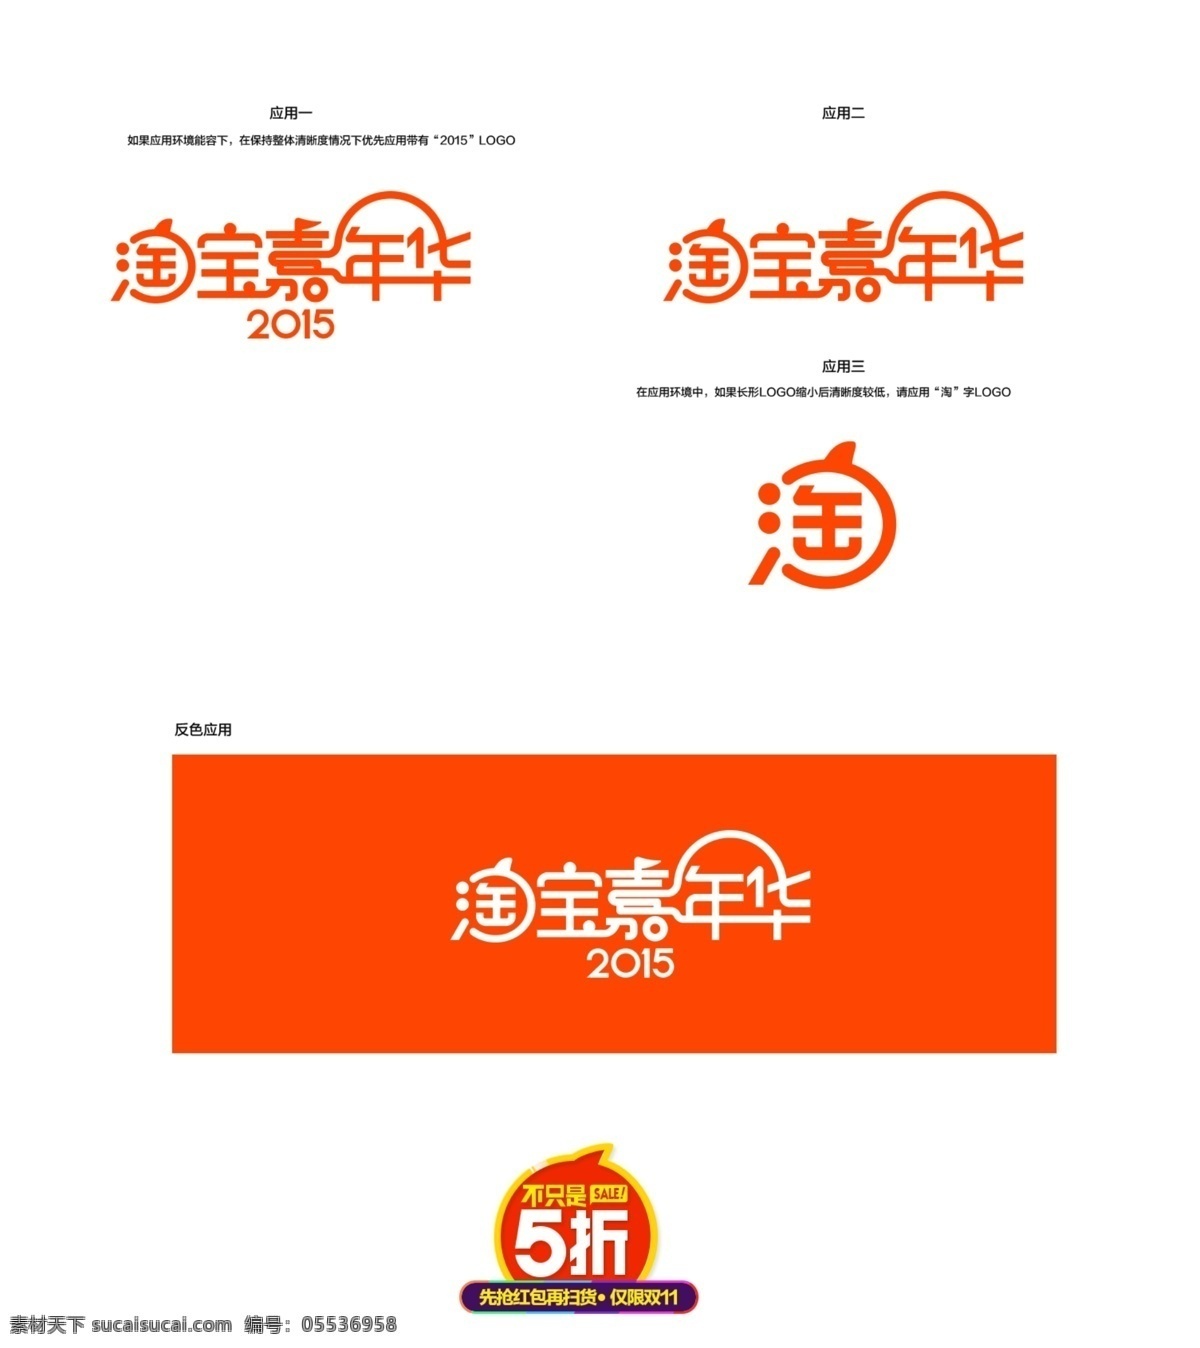 2015 淘宝 嘉年华 logo 淘宝嘉年华 双 光棍节 狂欢节 不止5折 分层